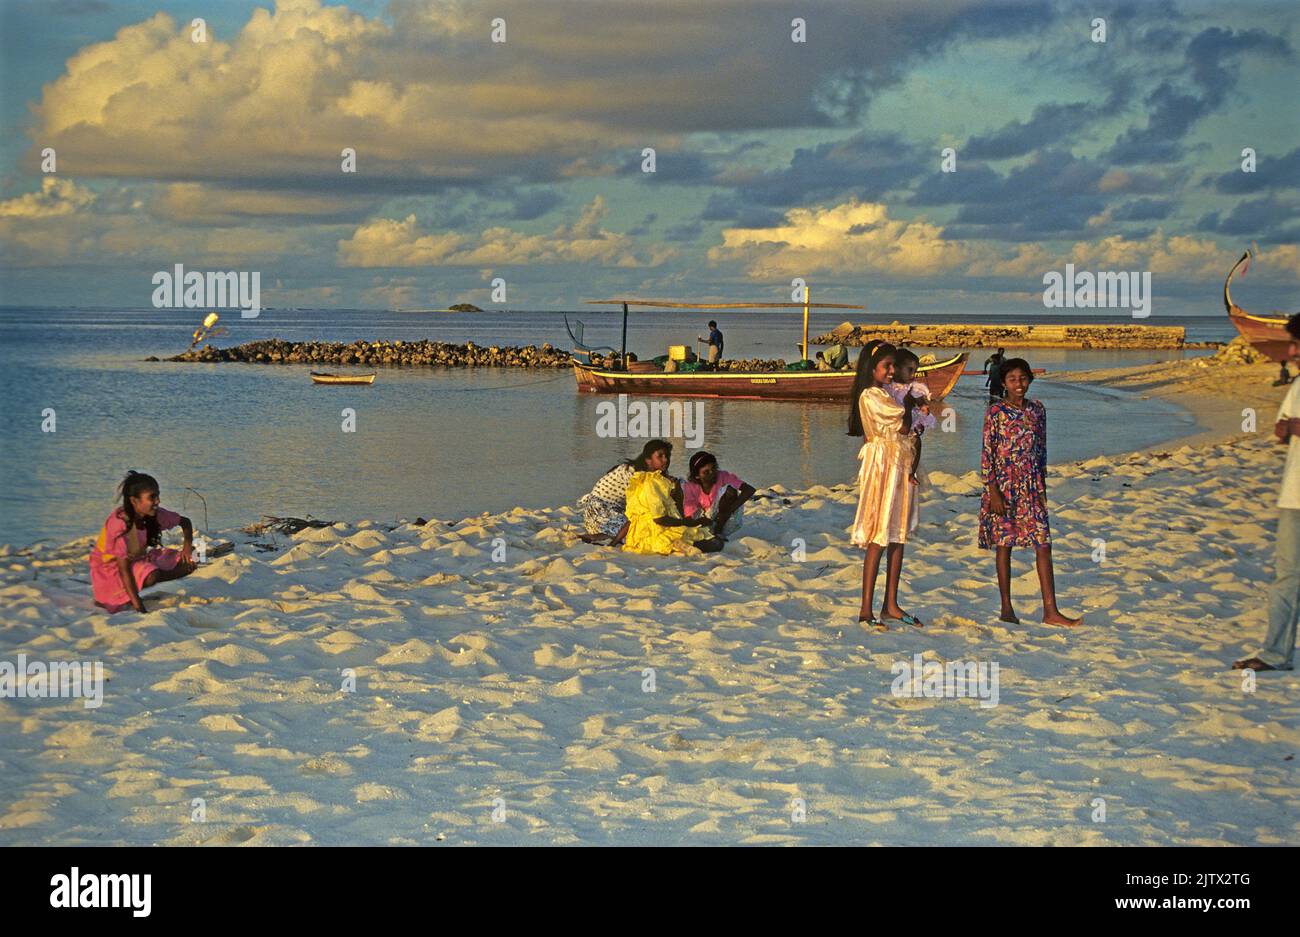 Jeunes filles à la plage, coucher de soleil, île d'accueil Mahembadhoo, Maldives, océan Indien, Asie Banque D'Images